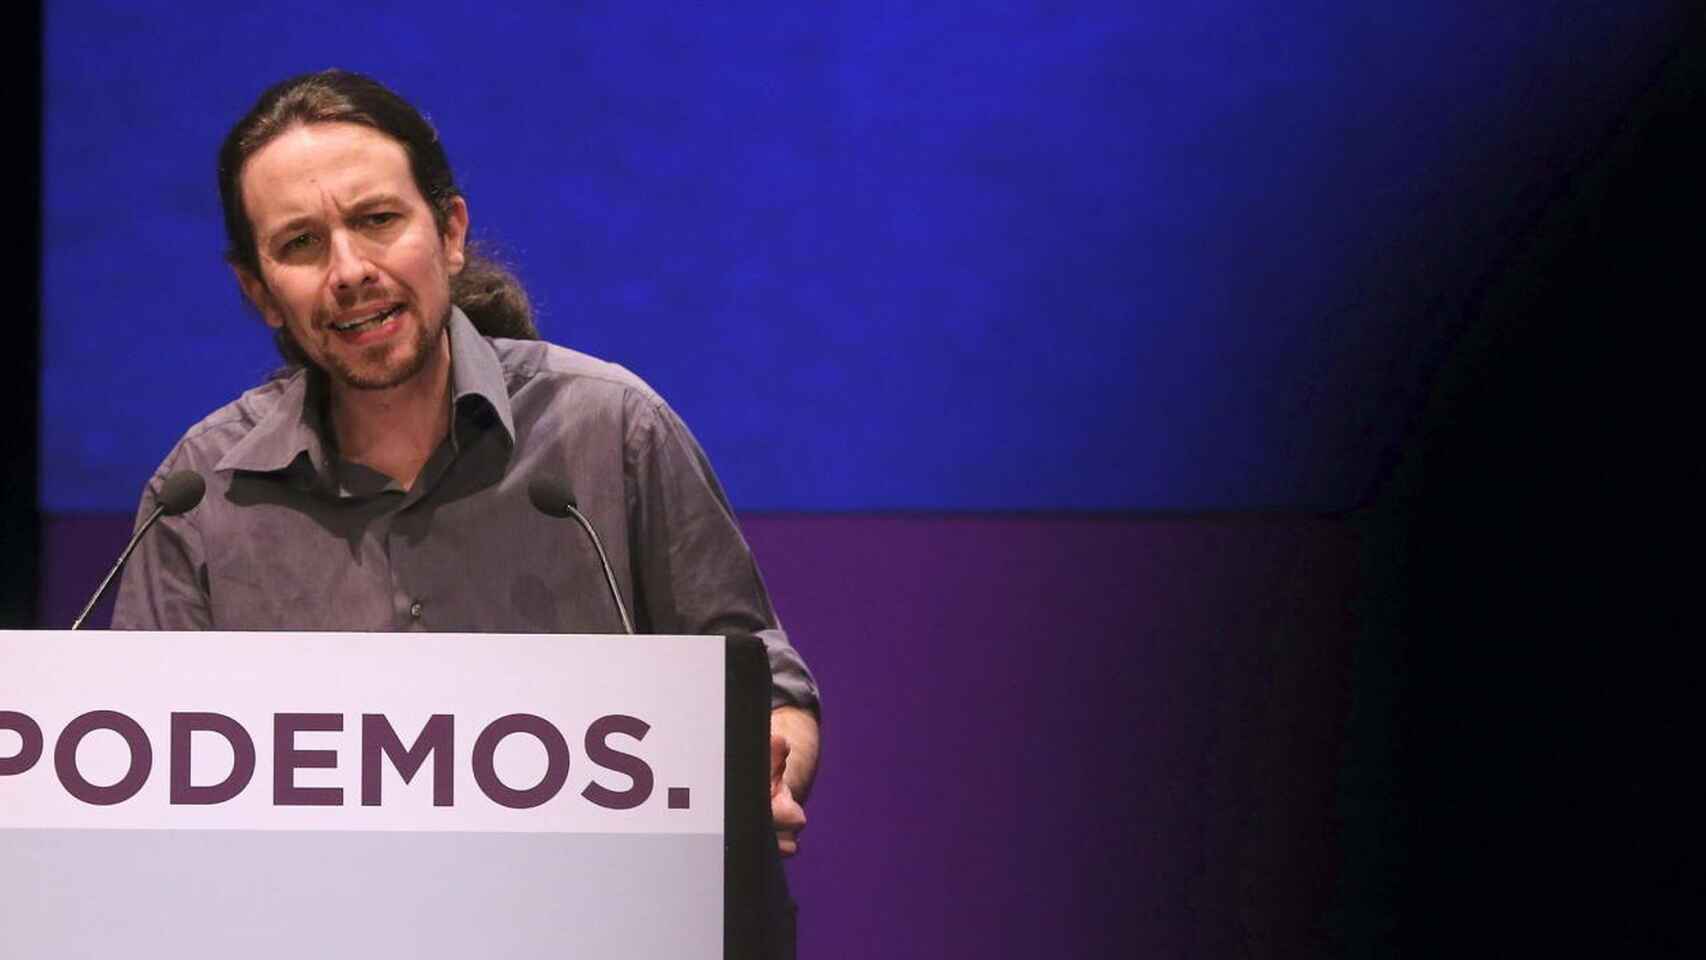 El candidato de Podemos a la Comunidad de Madrid, Pablo Iglesias. Efe